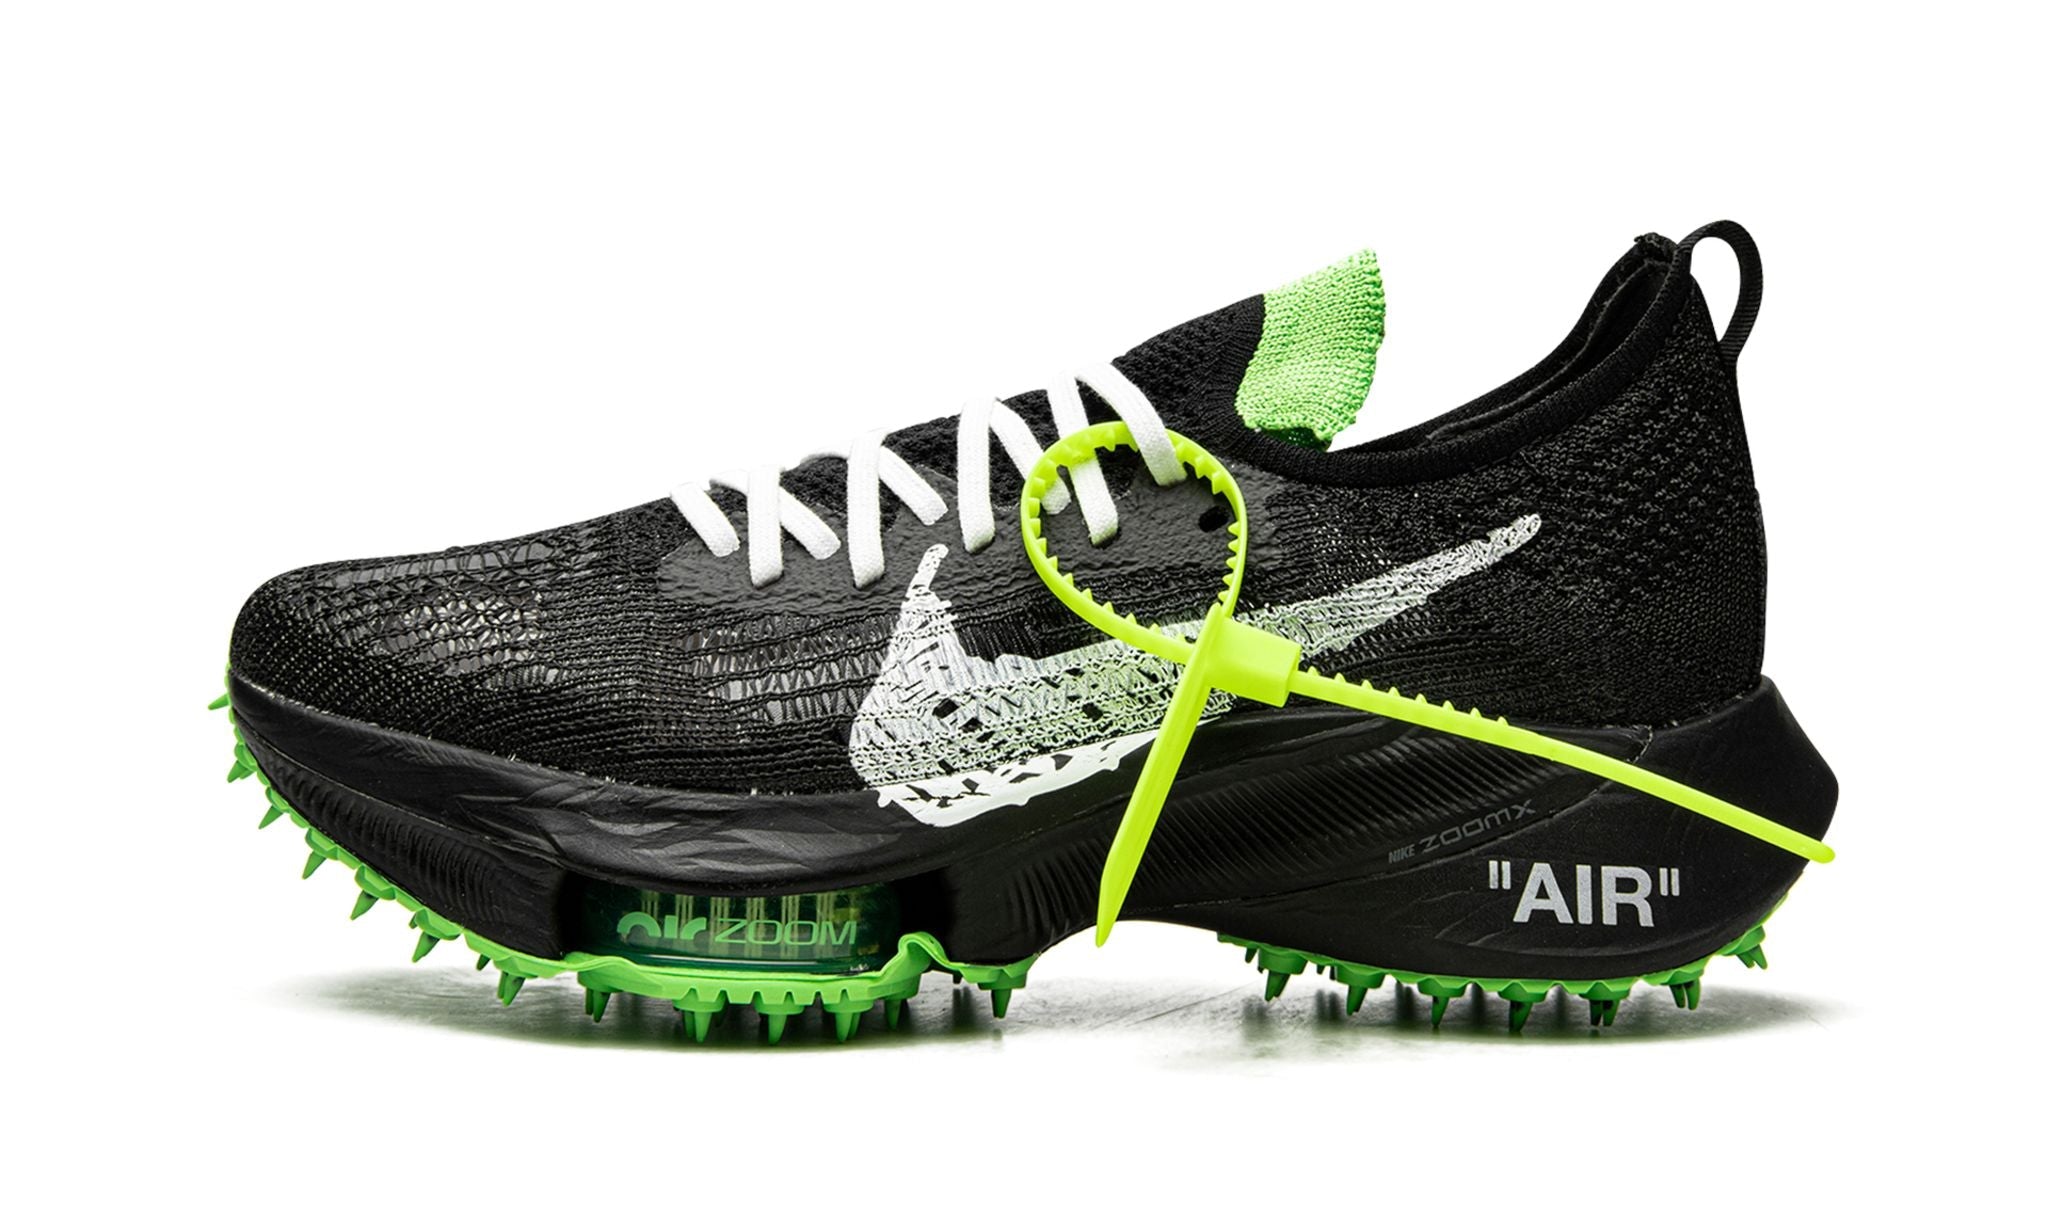 Nike Air Zoom Tempo Next% Flyknit Off-White Black Scream Green - Air Max - Pirri - Air Max Czarny